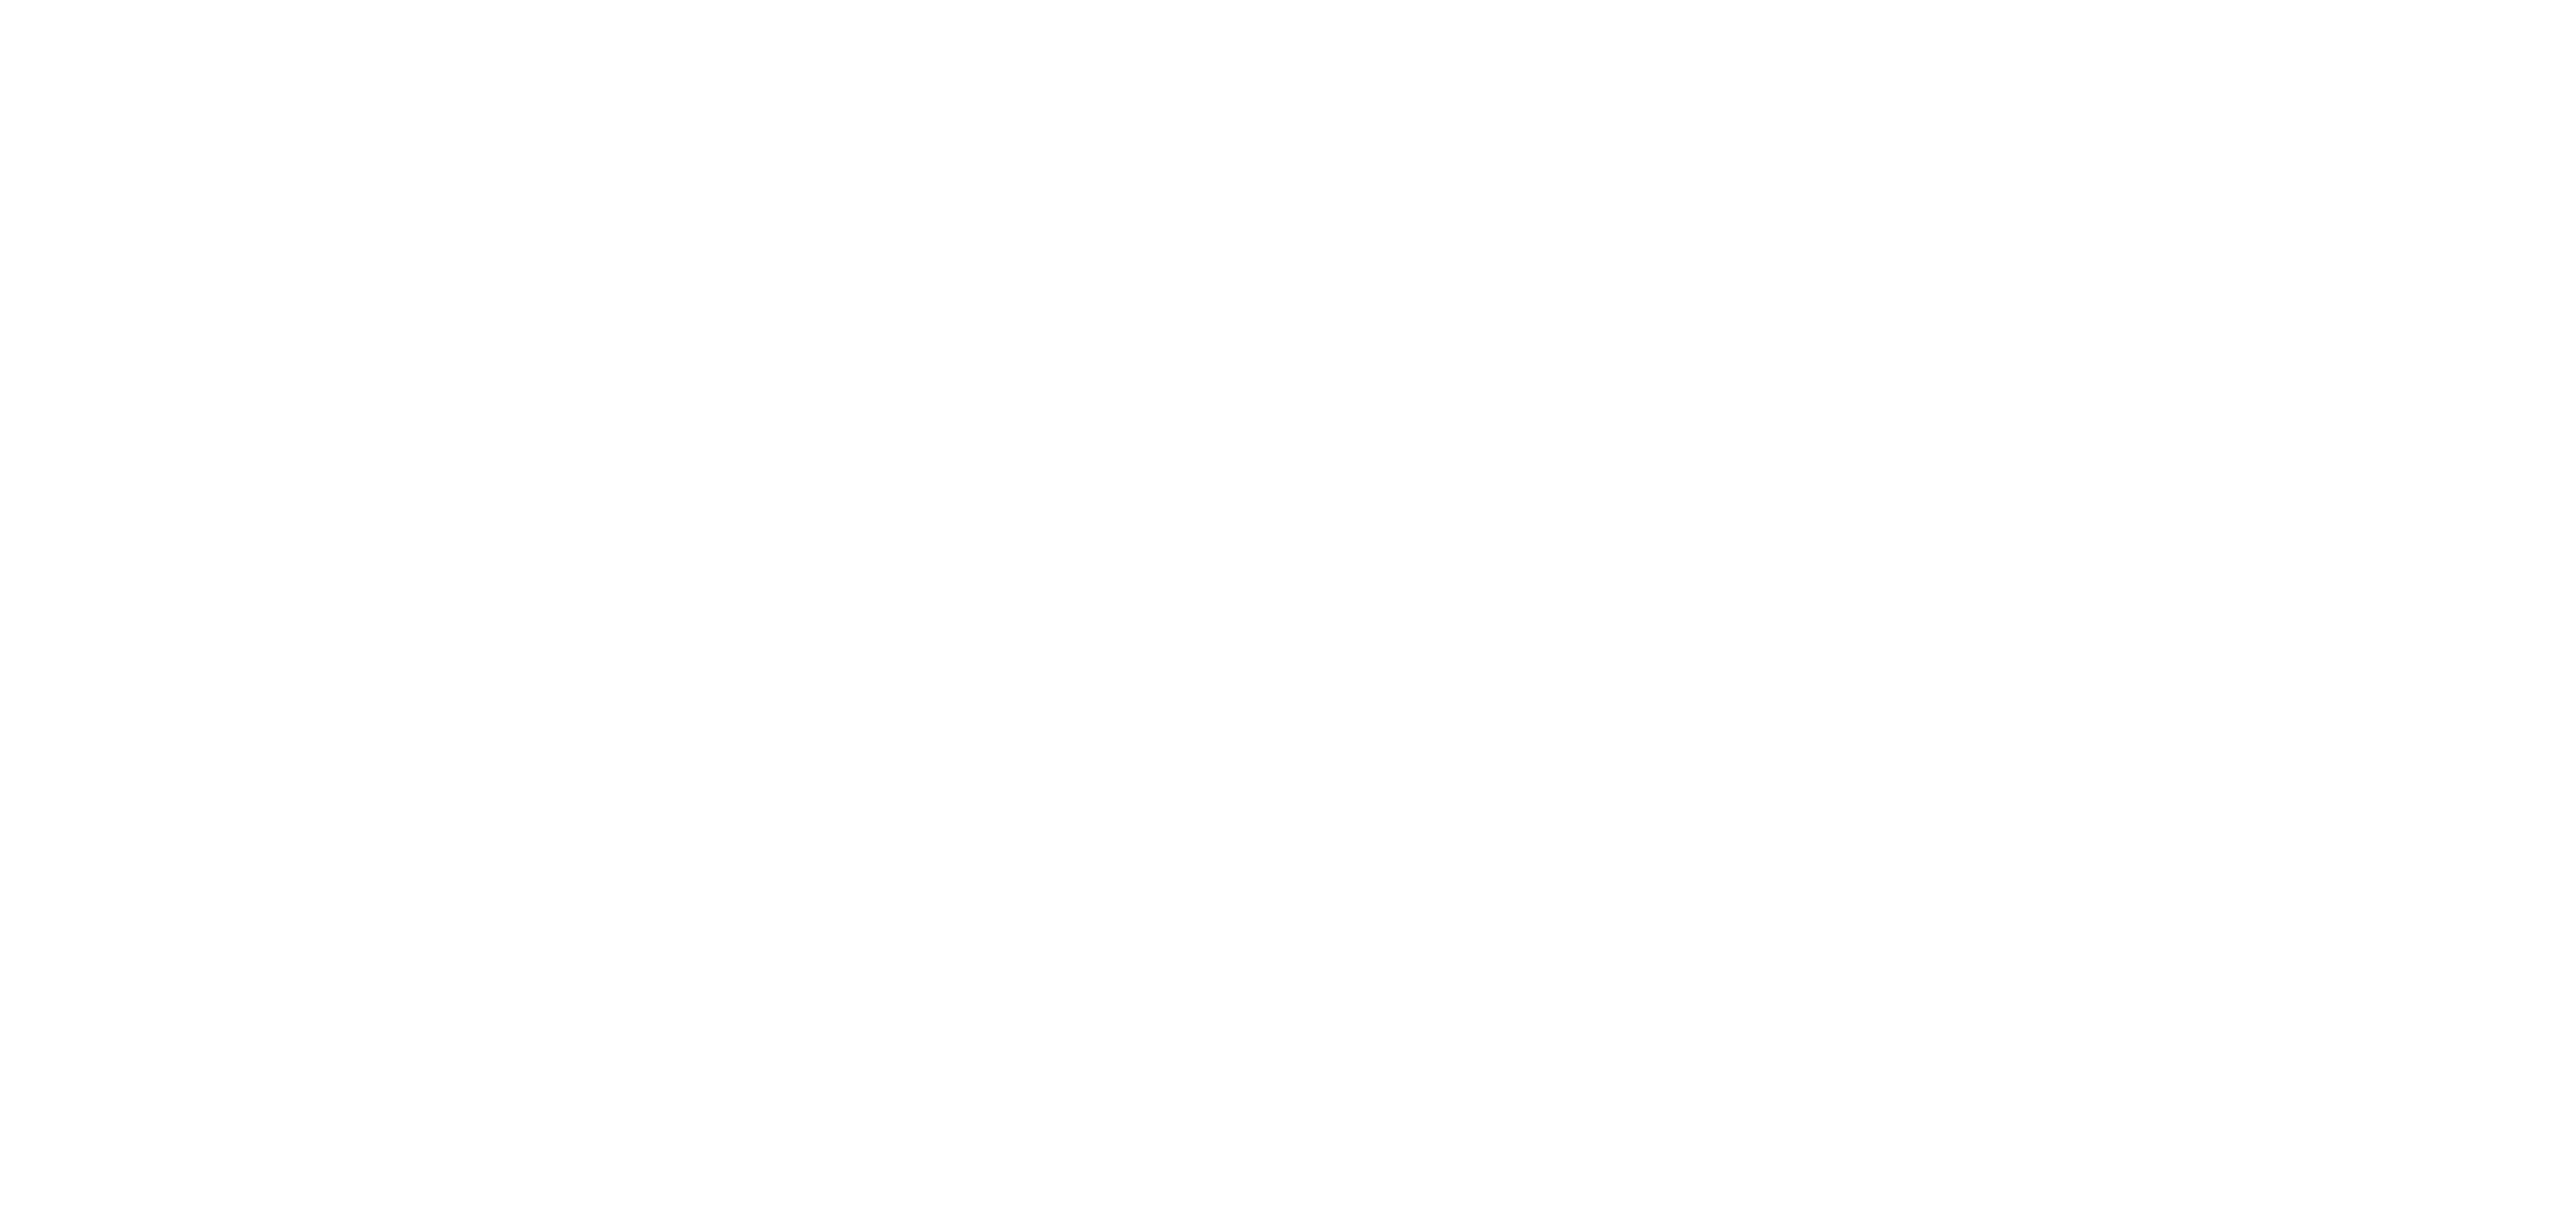 kloth wear